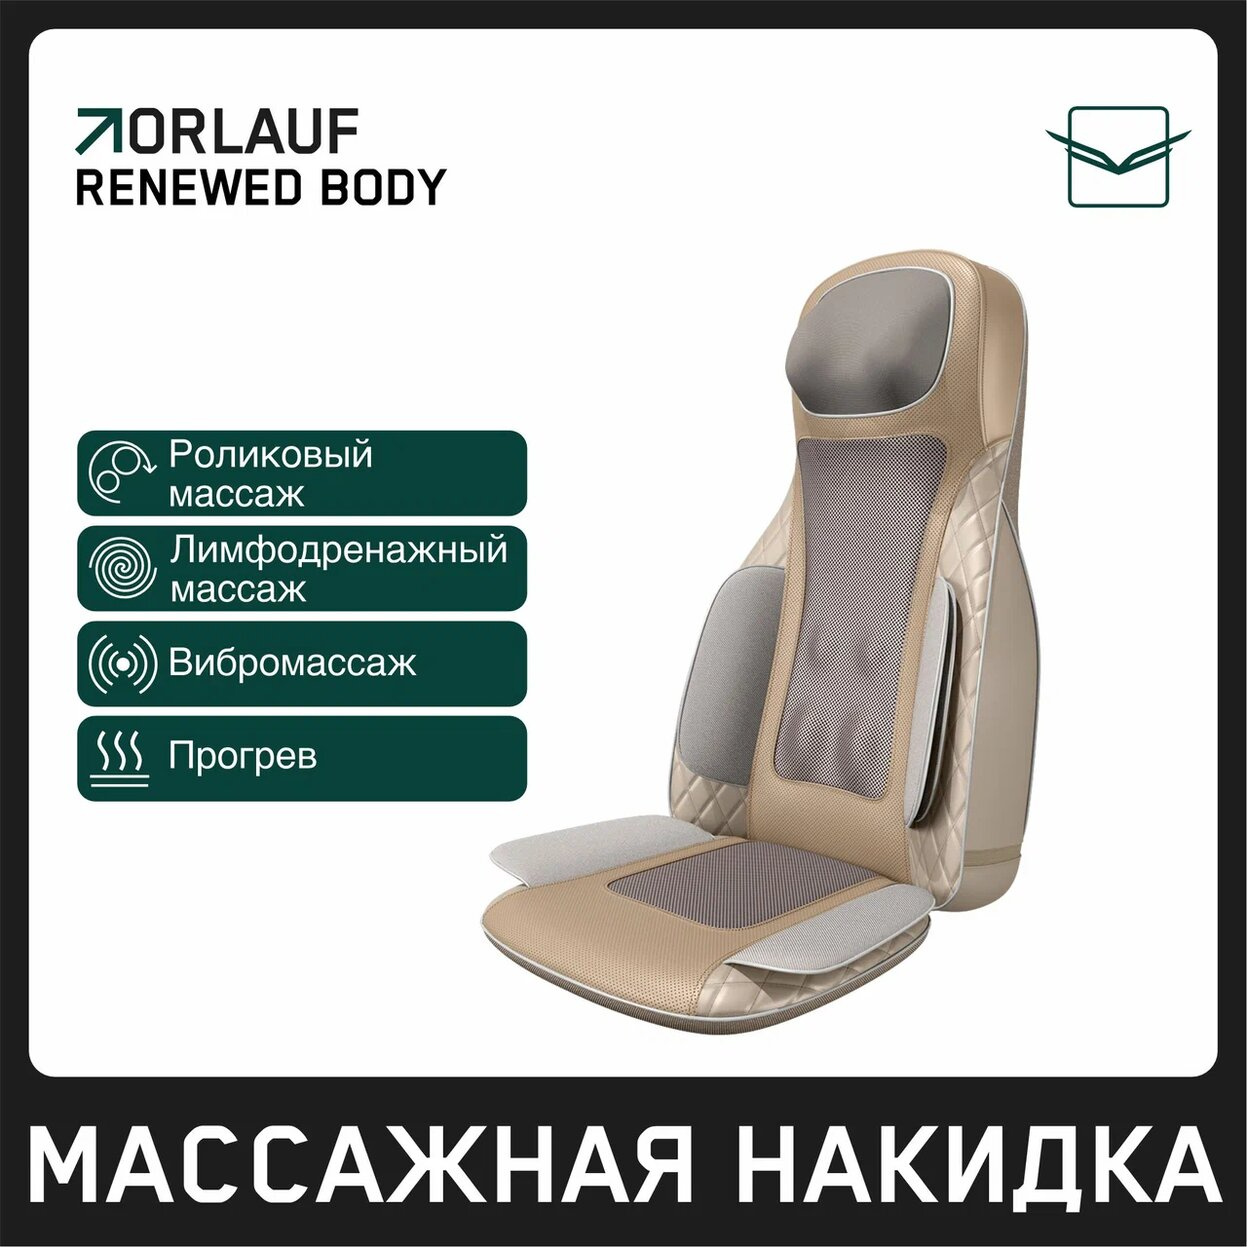 Orlauf Renewed Body из каталога массажных накидок в Волгограде по цене 39900 ₽